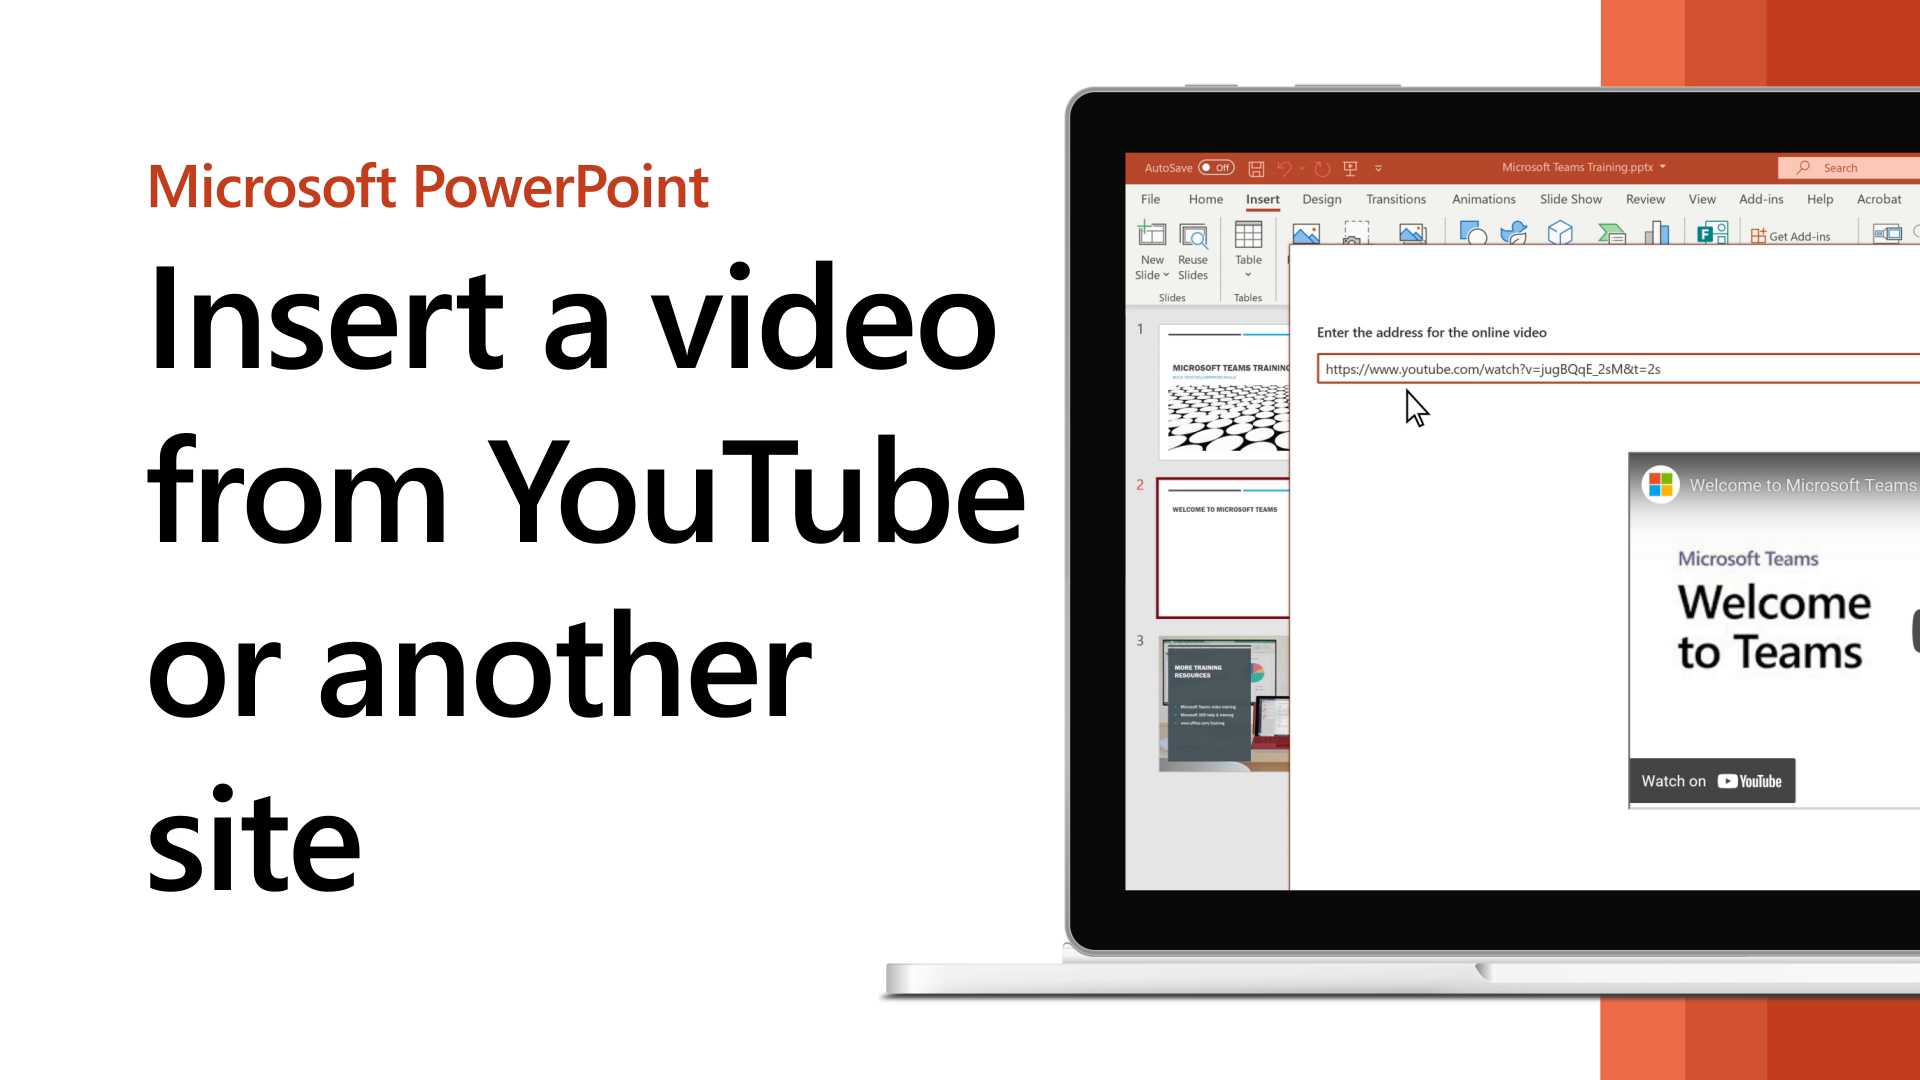 Thêm video vào bản thuyết trình hoặc sản phẩm của bạn với tính năng chèn video của Microsoft. Với tính năng này, bạn có thể tăng tính tương tác và truyền tải thông điệp của mình một cách dễ dàng hơn.